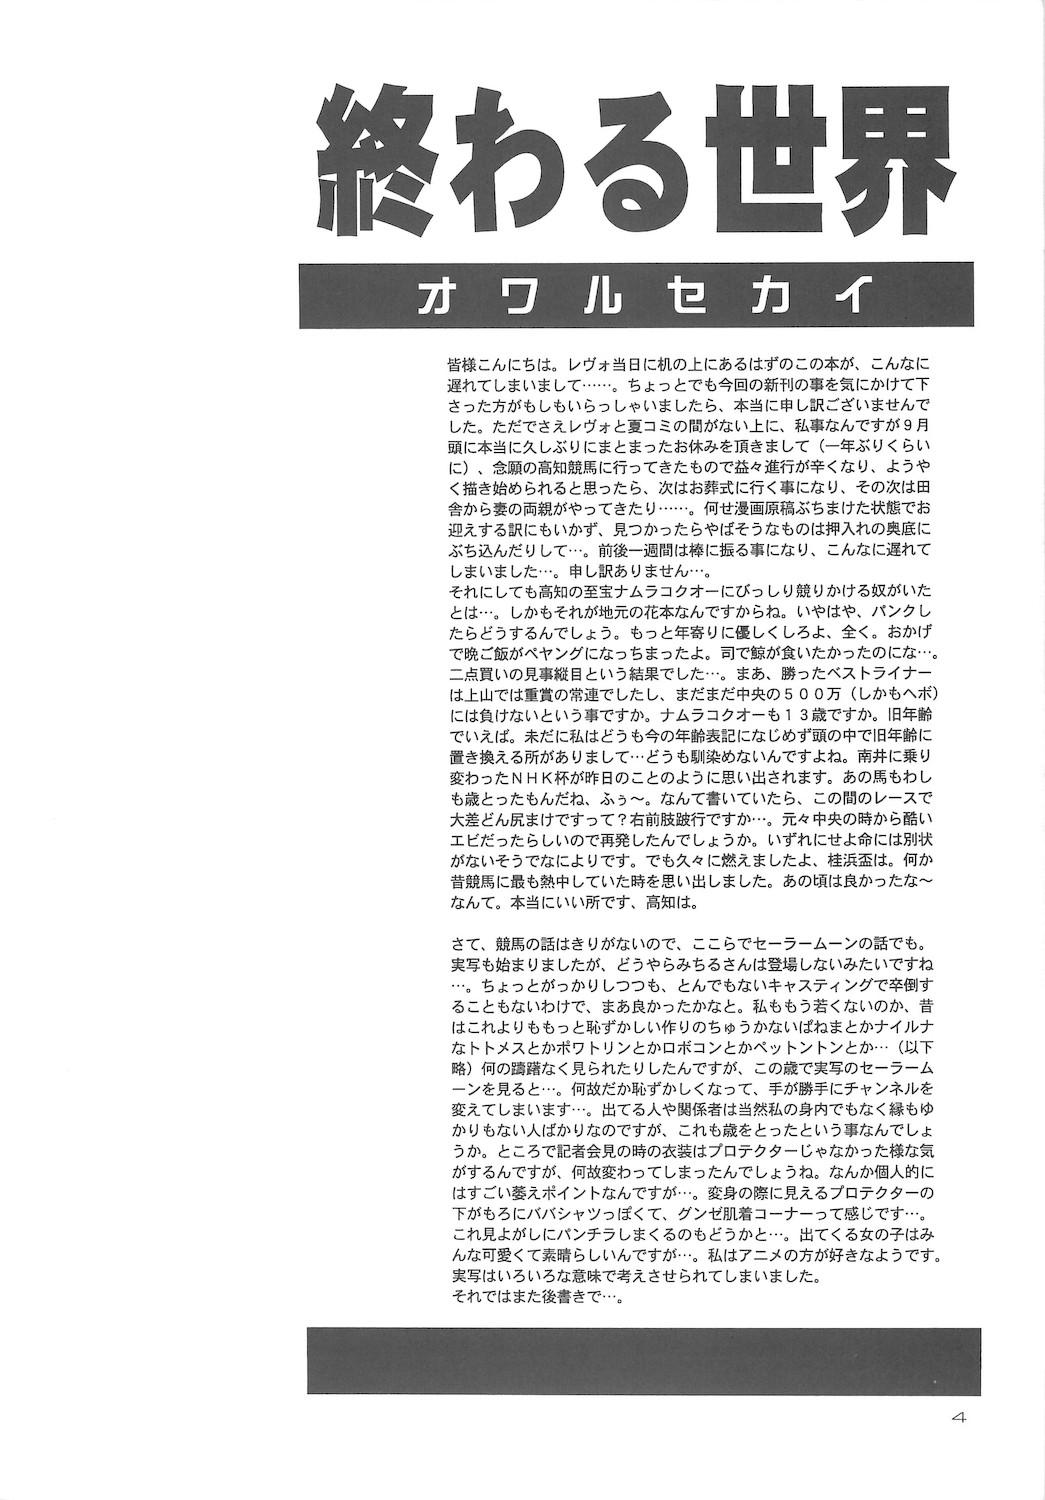 Massive Owaru Sekai dai 4 shou - Sailor moon Workout - Page 4